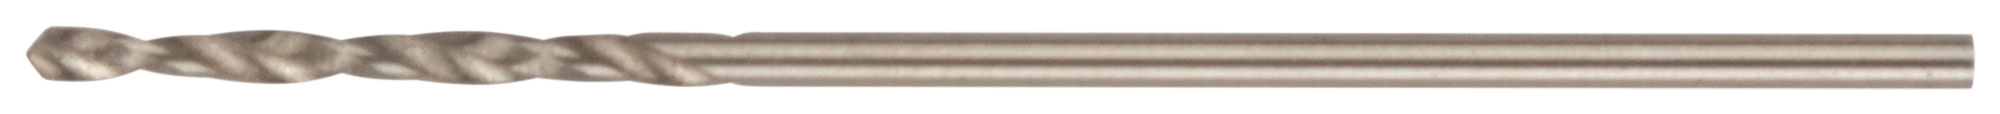 Сверло по металлу Cutop Profi  с кобальтом 5%, 1 x 34 мм (10 шт)